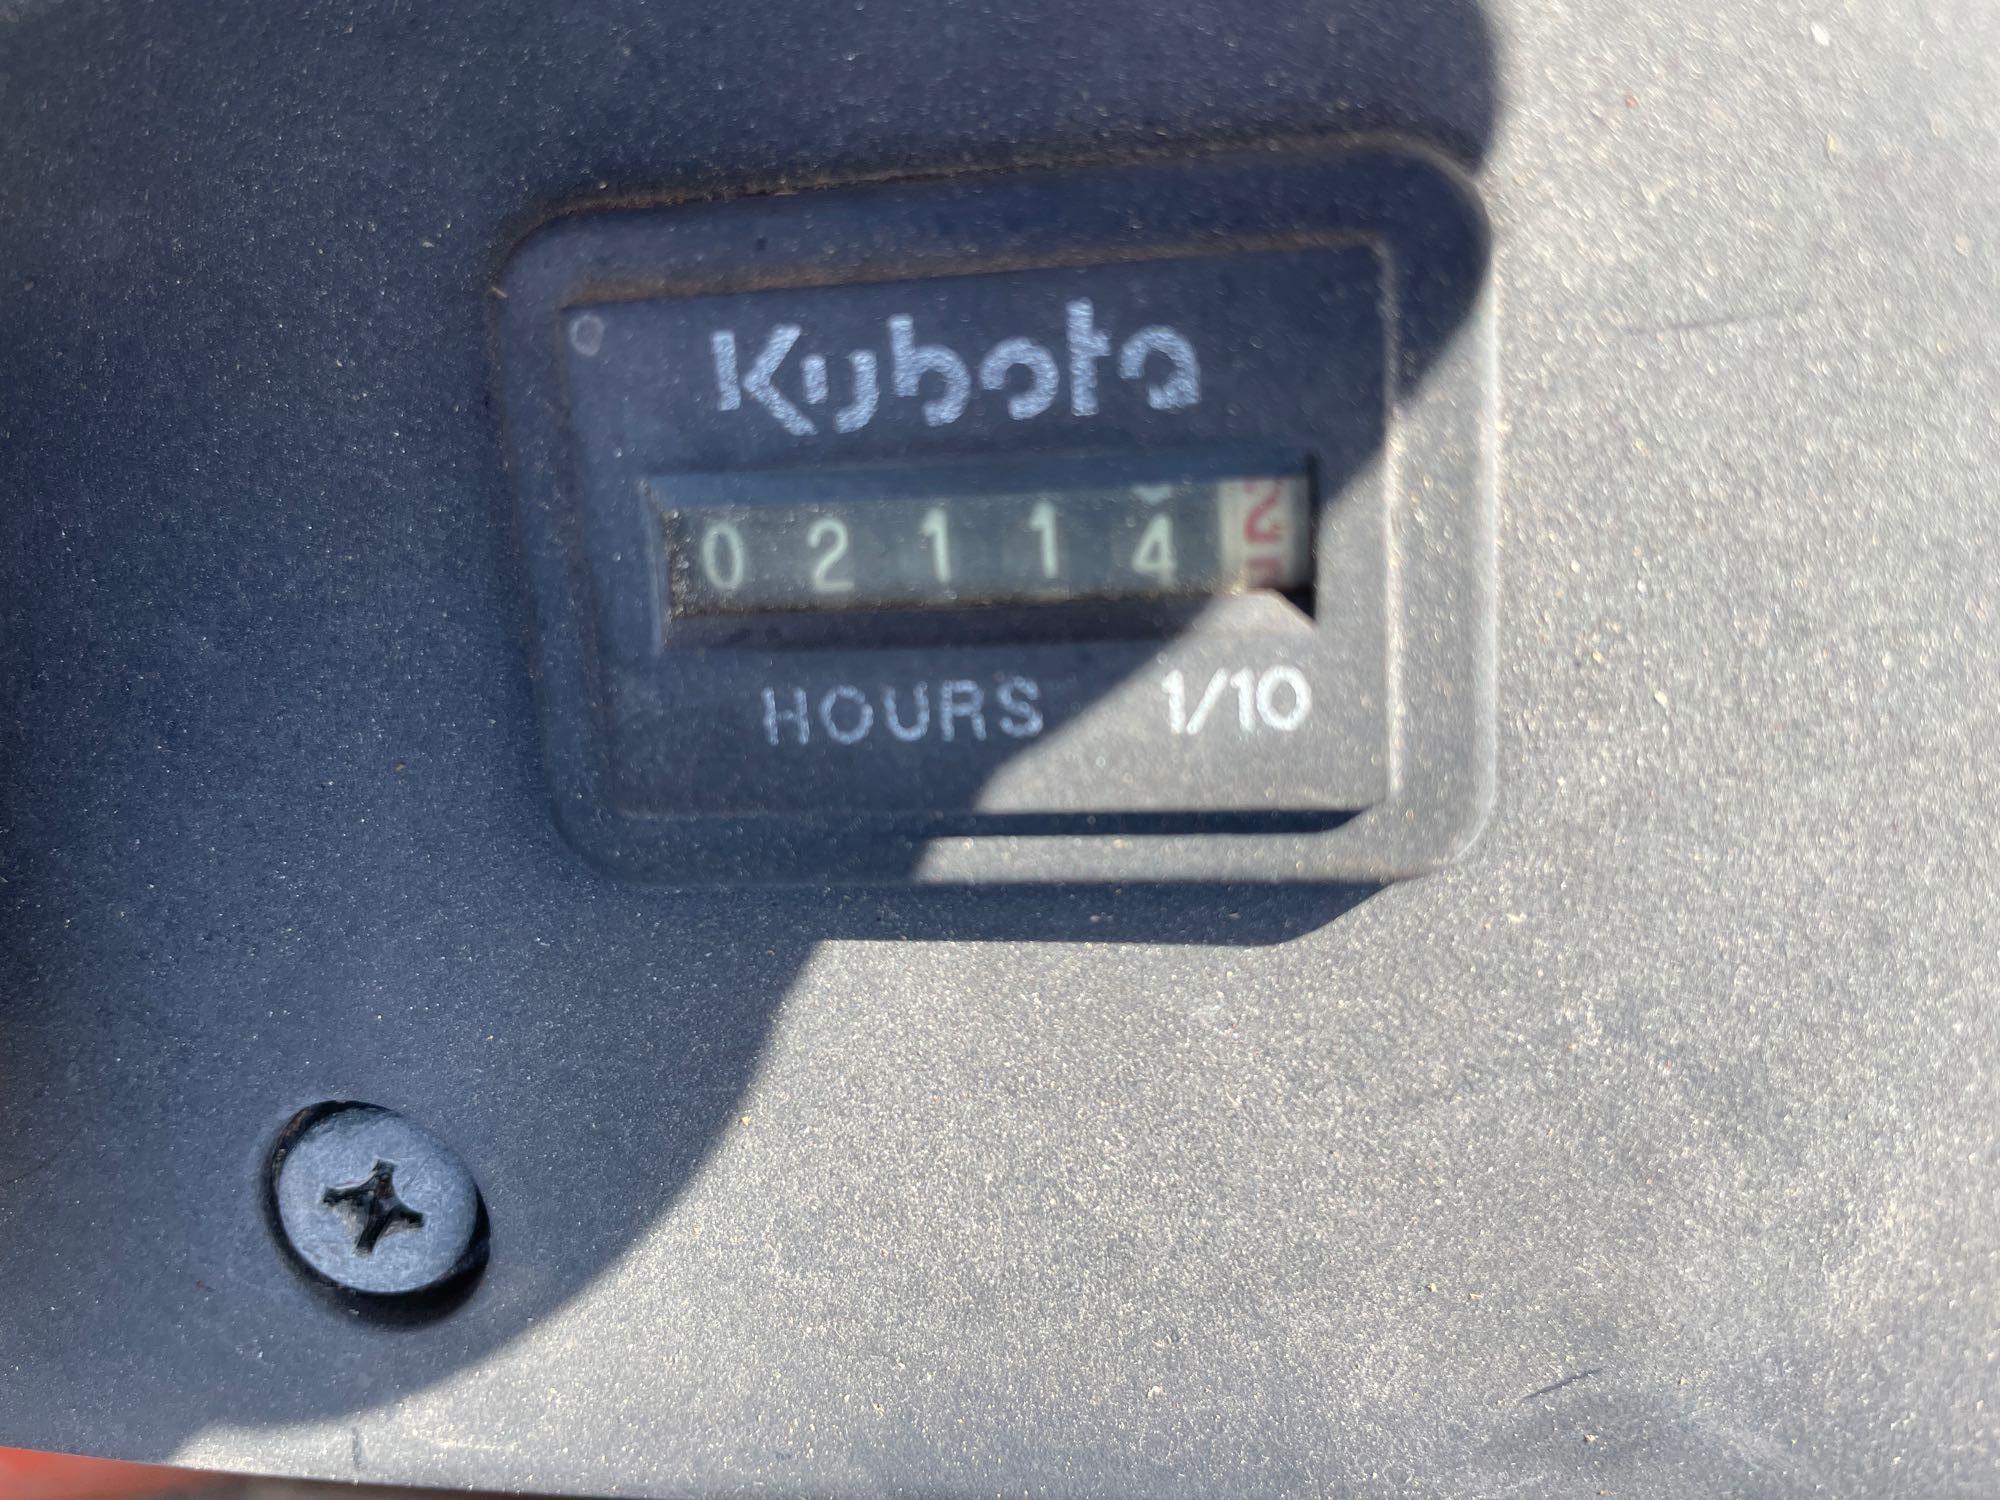 Kubota ZP330 Zero Turn Mower